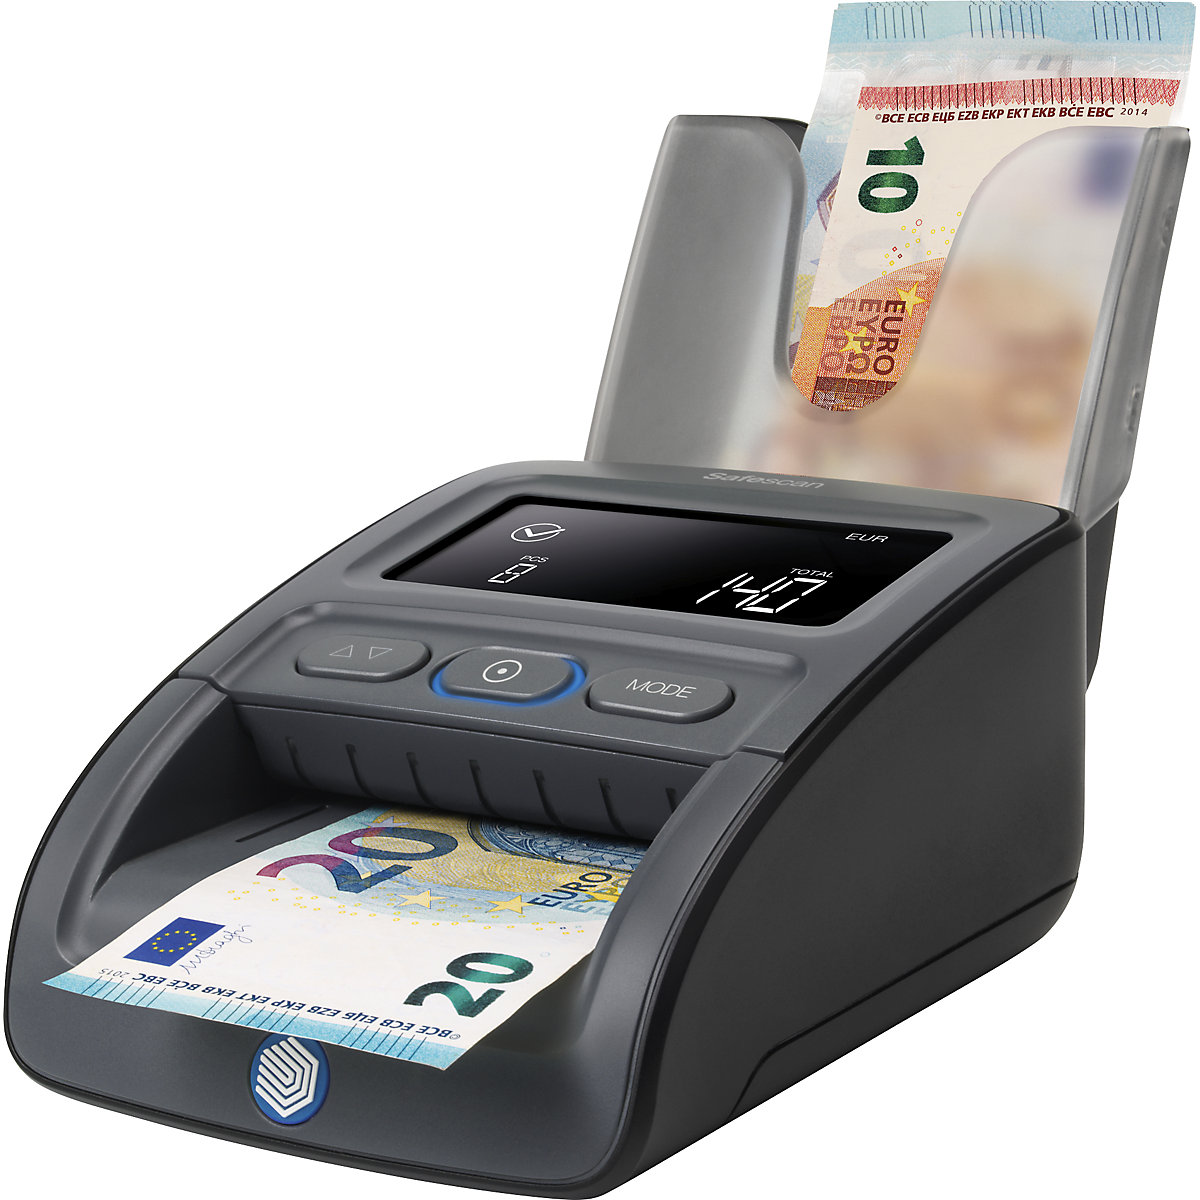 Detector de billetes falsos – Safescan (Imagen del producto 9)-8